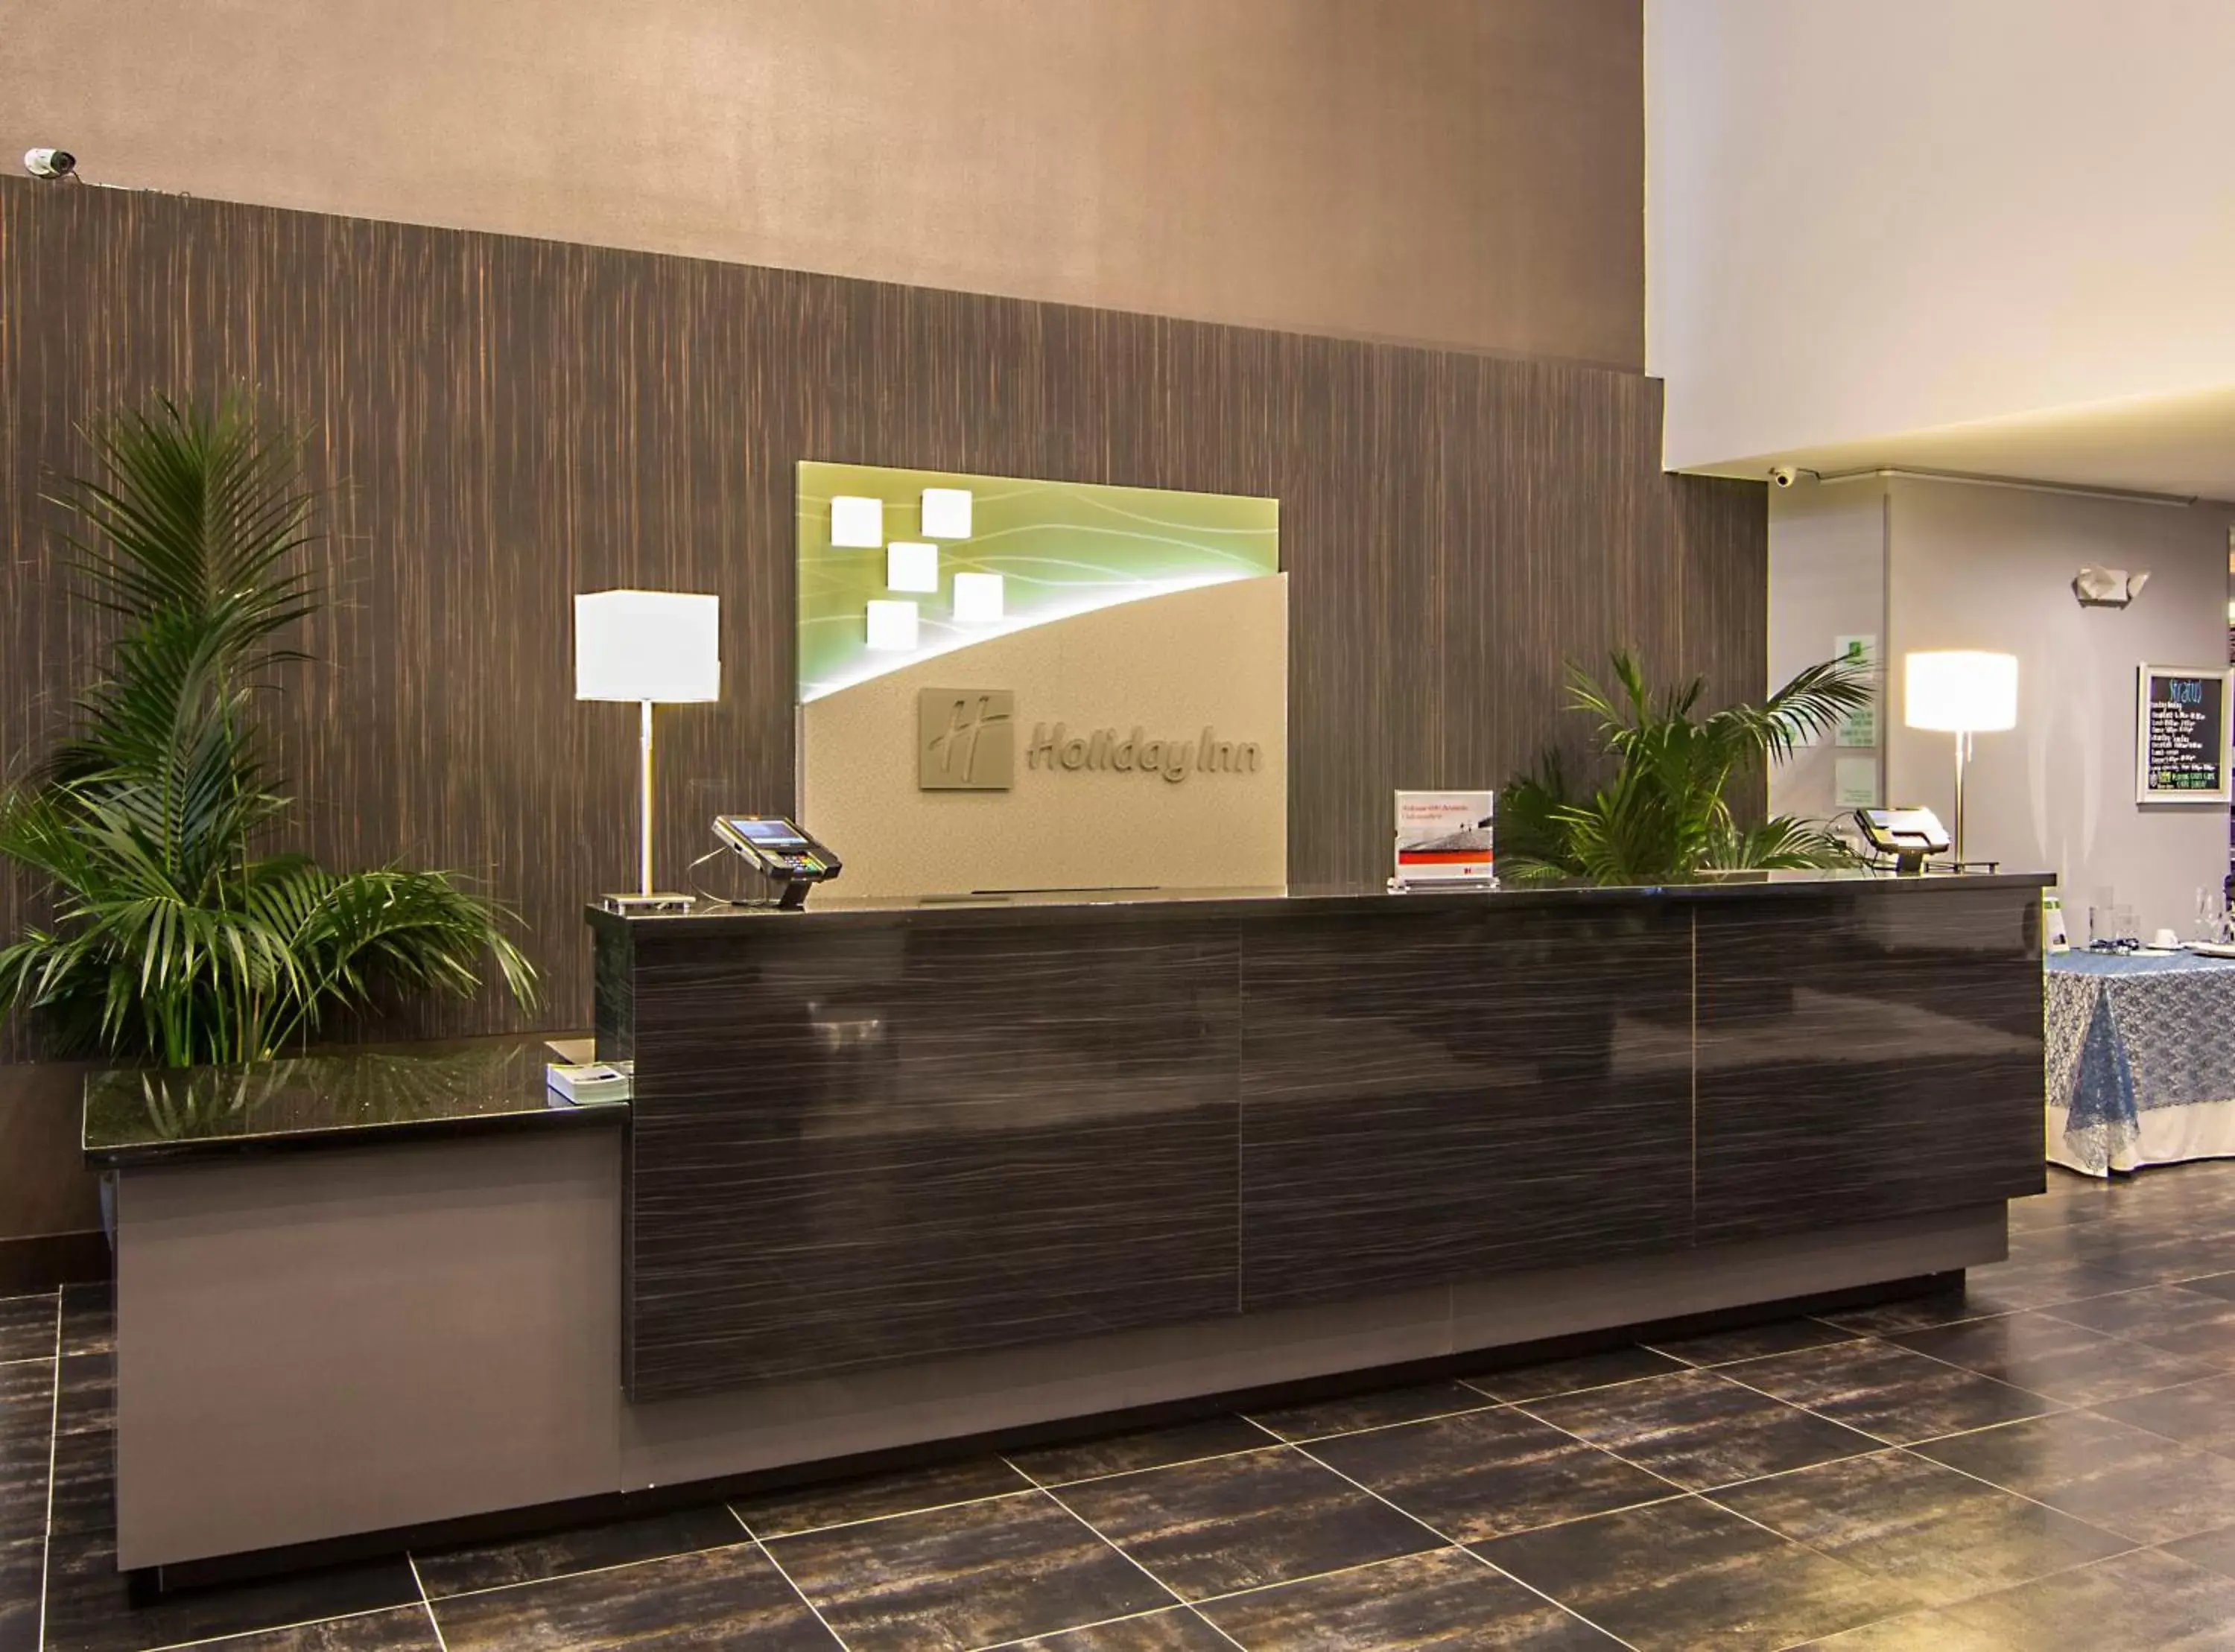 Property building, Lobby/Reception in Holiday Inn Carlsbad/San Diego, an IHG Hotel